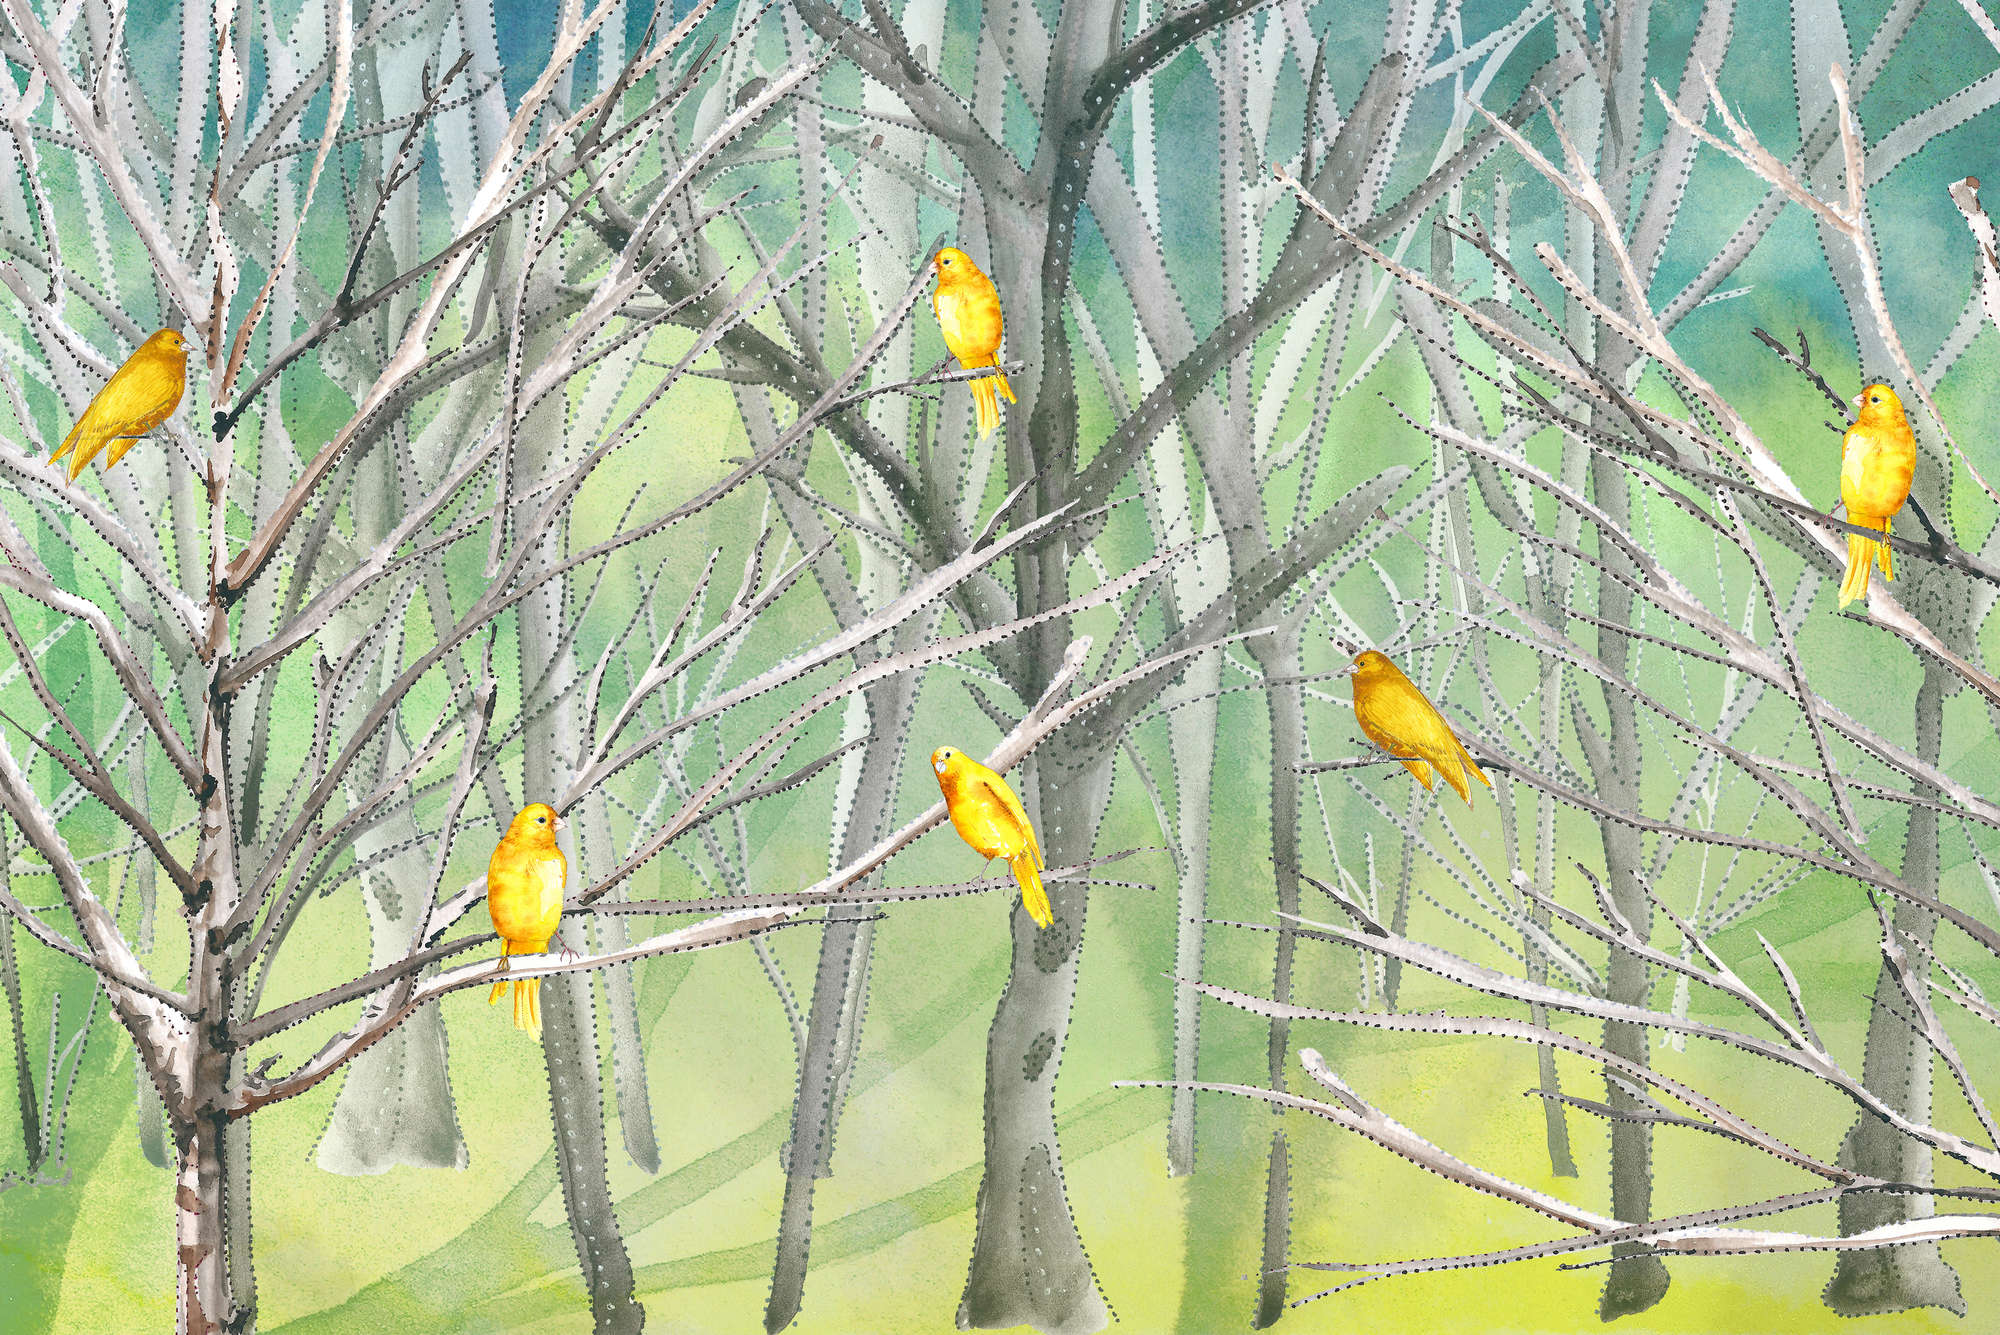             Wald Fototapete mit Vögeln in Blau und Gelb auf Perlmutt Glattvlies
        